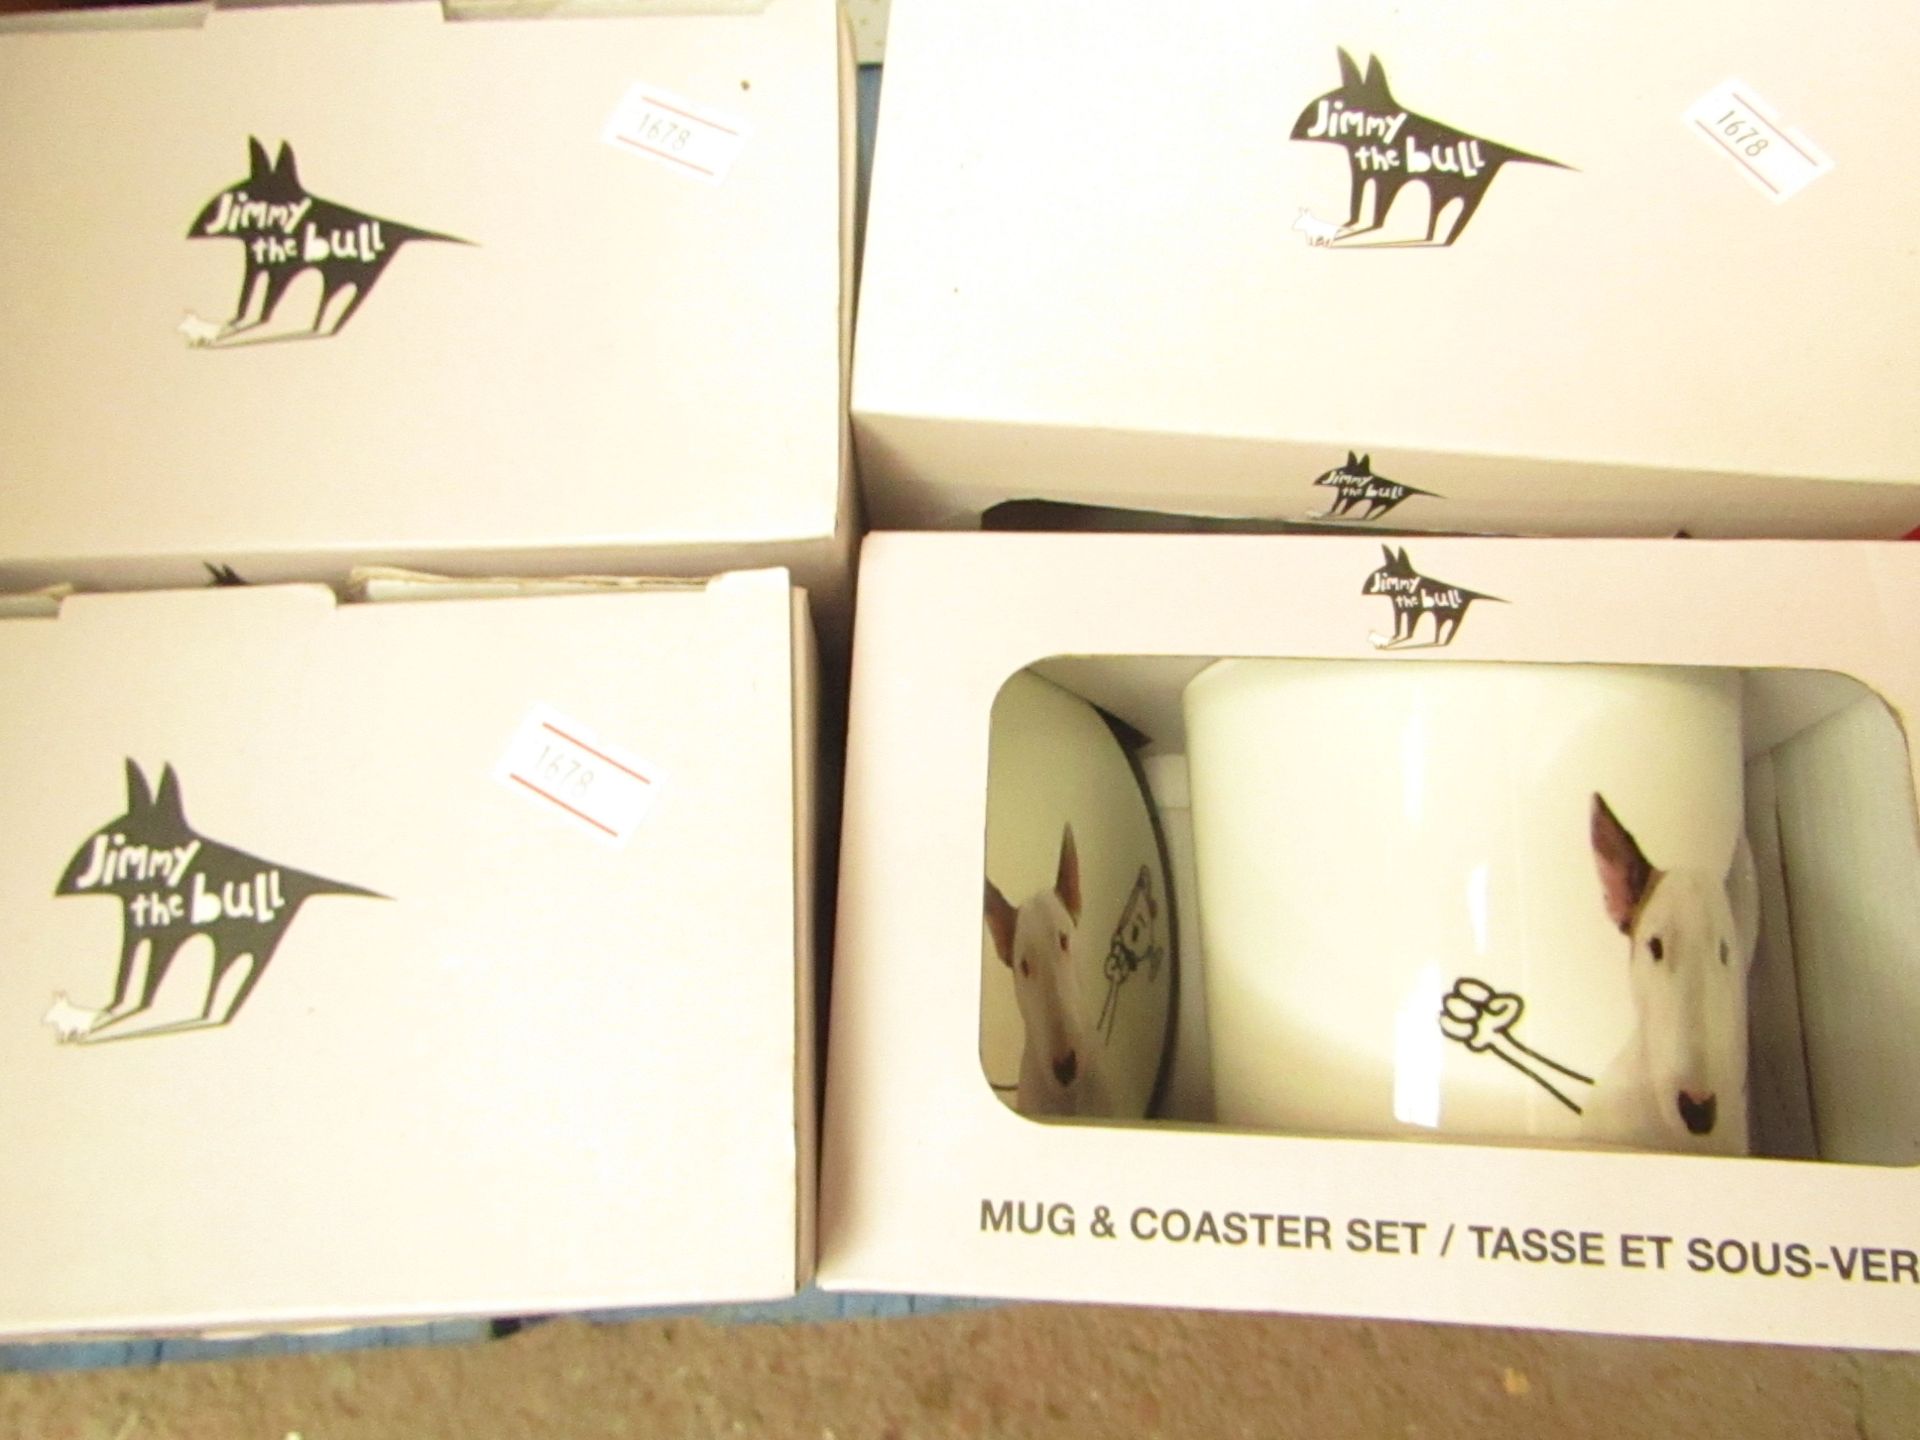 4 x Jimmy The Bull Mug & Coaster Sets. New & Boxed